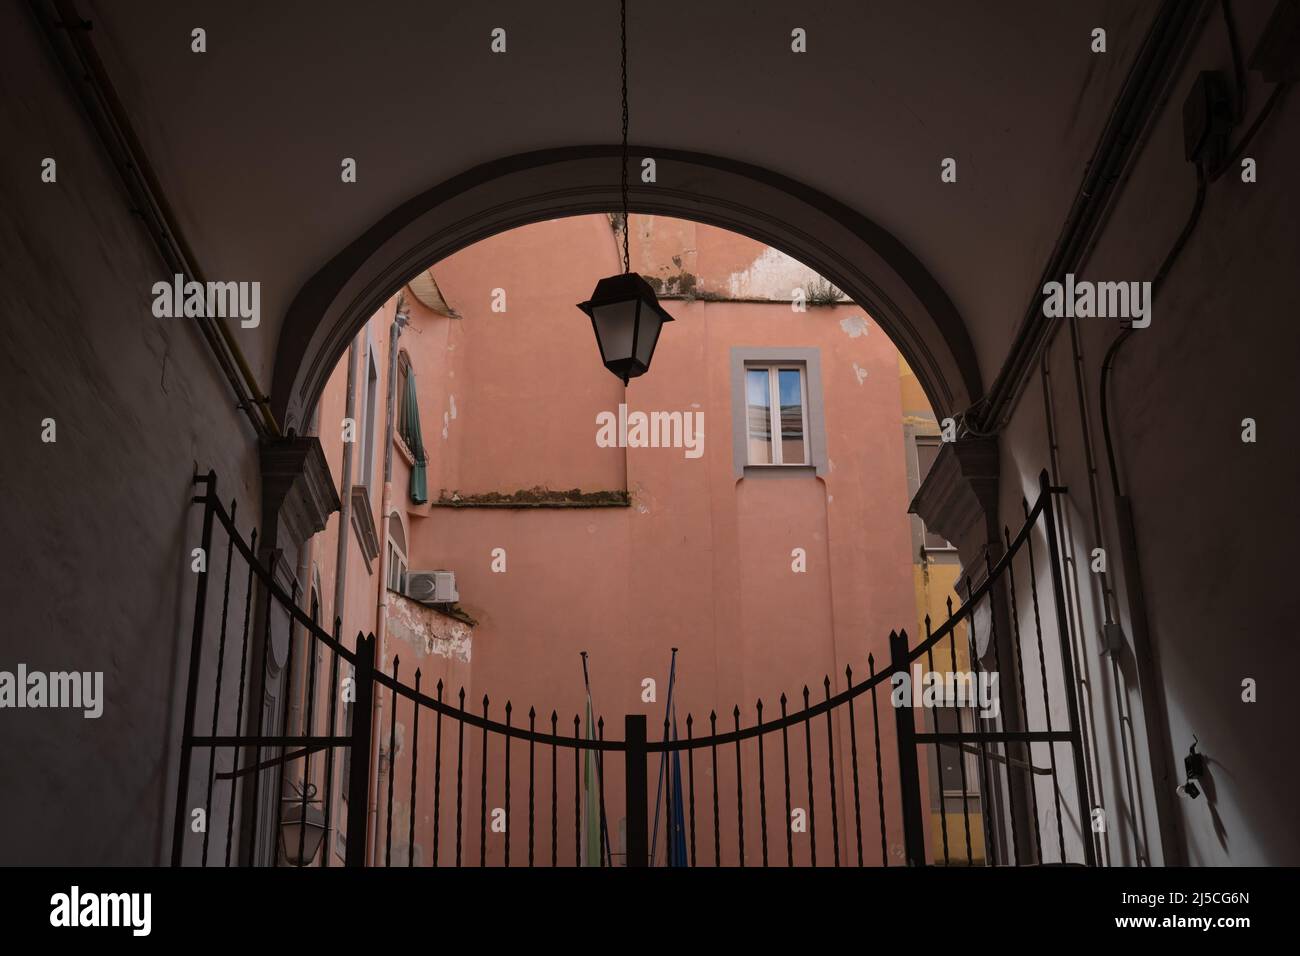 Lanterna di strada in un cortile chiuso di vecchio edificio a Napoli, Italia Foto Stock